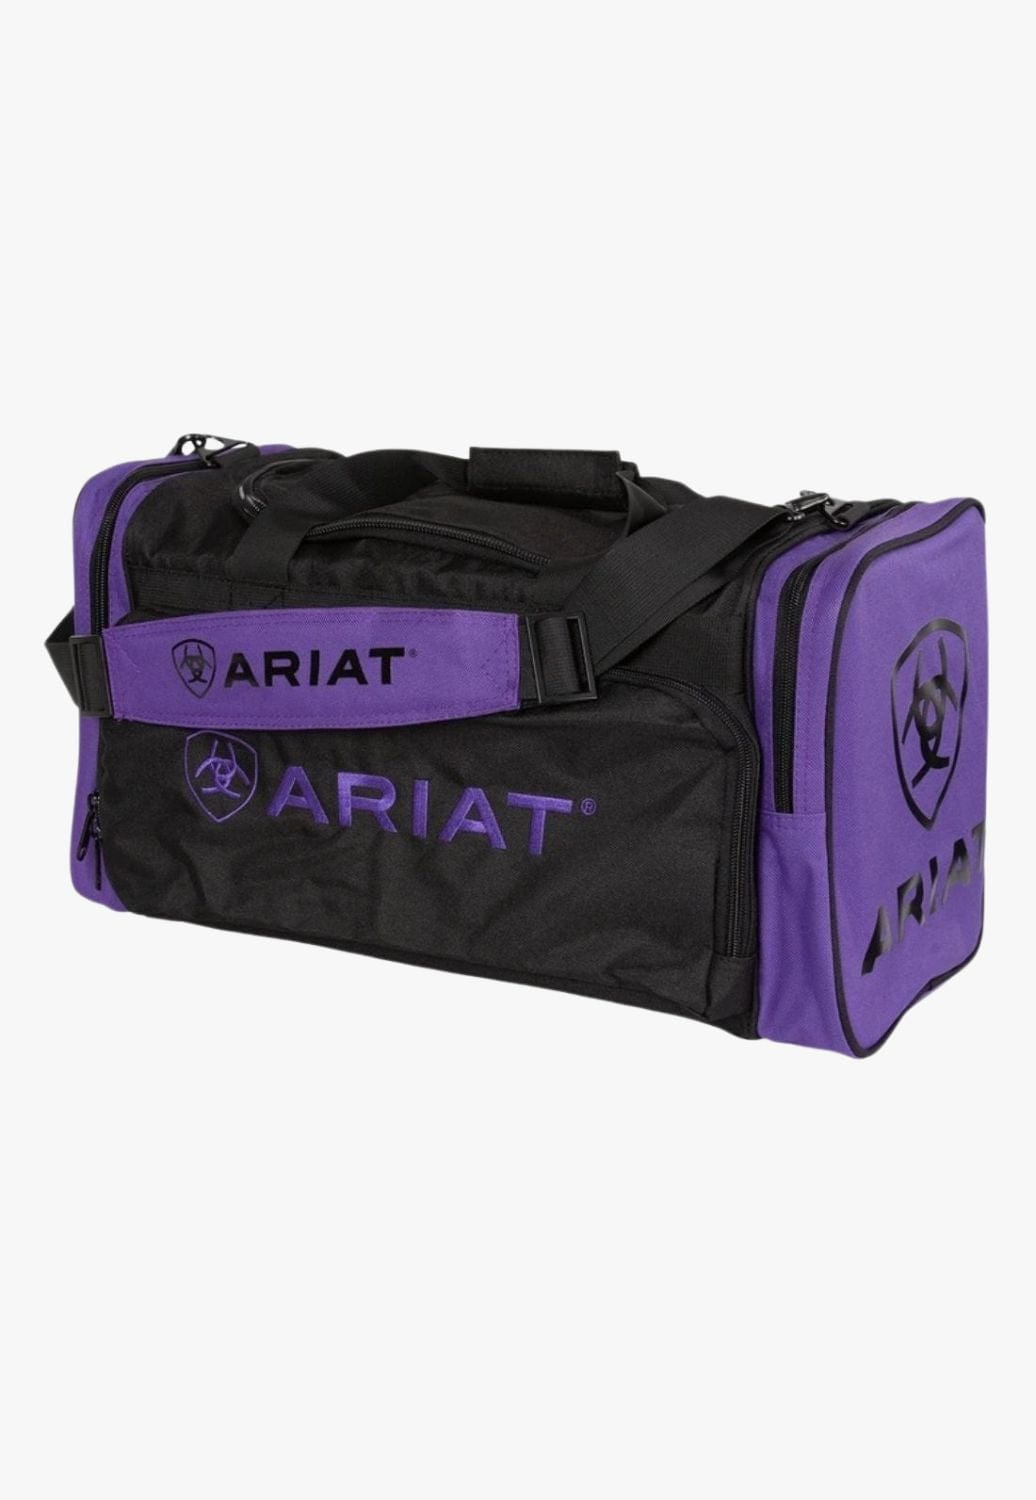 Ariat TRAVEL - Travel Bags Purple/Black Ariat Junior Gear Bag